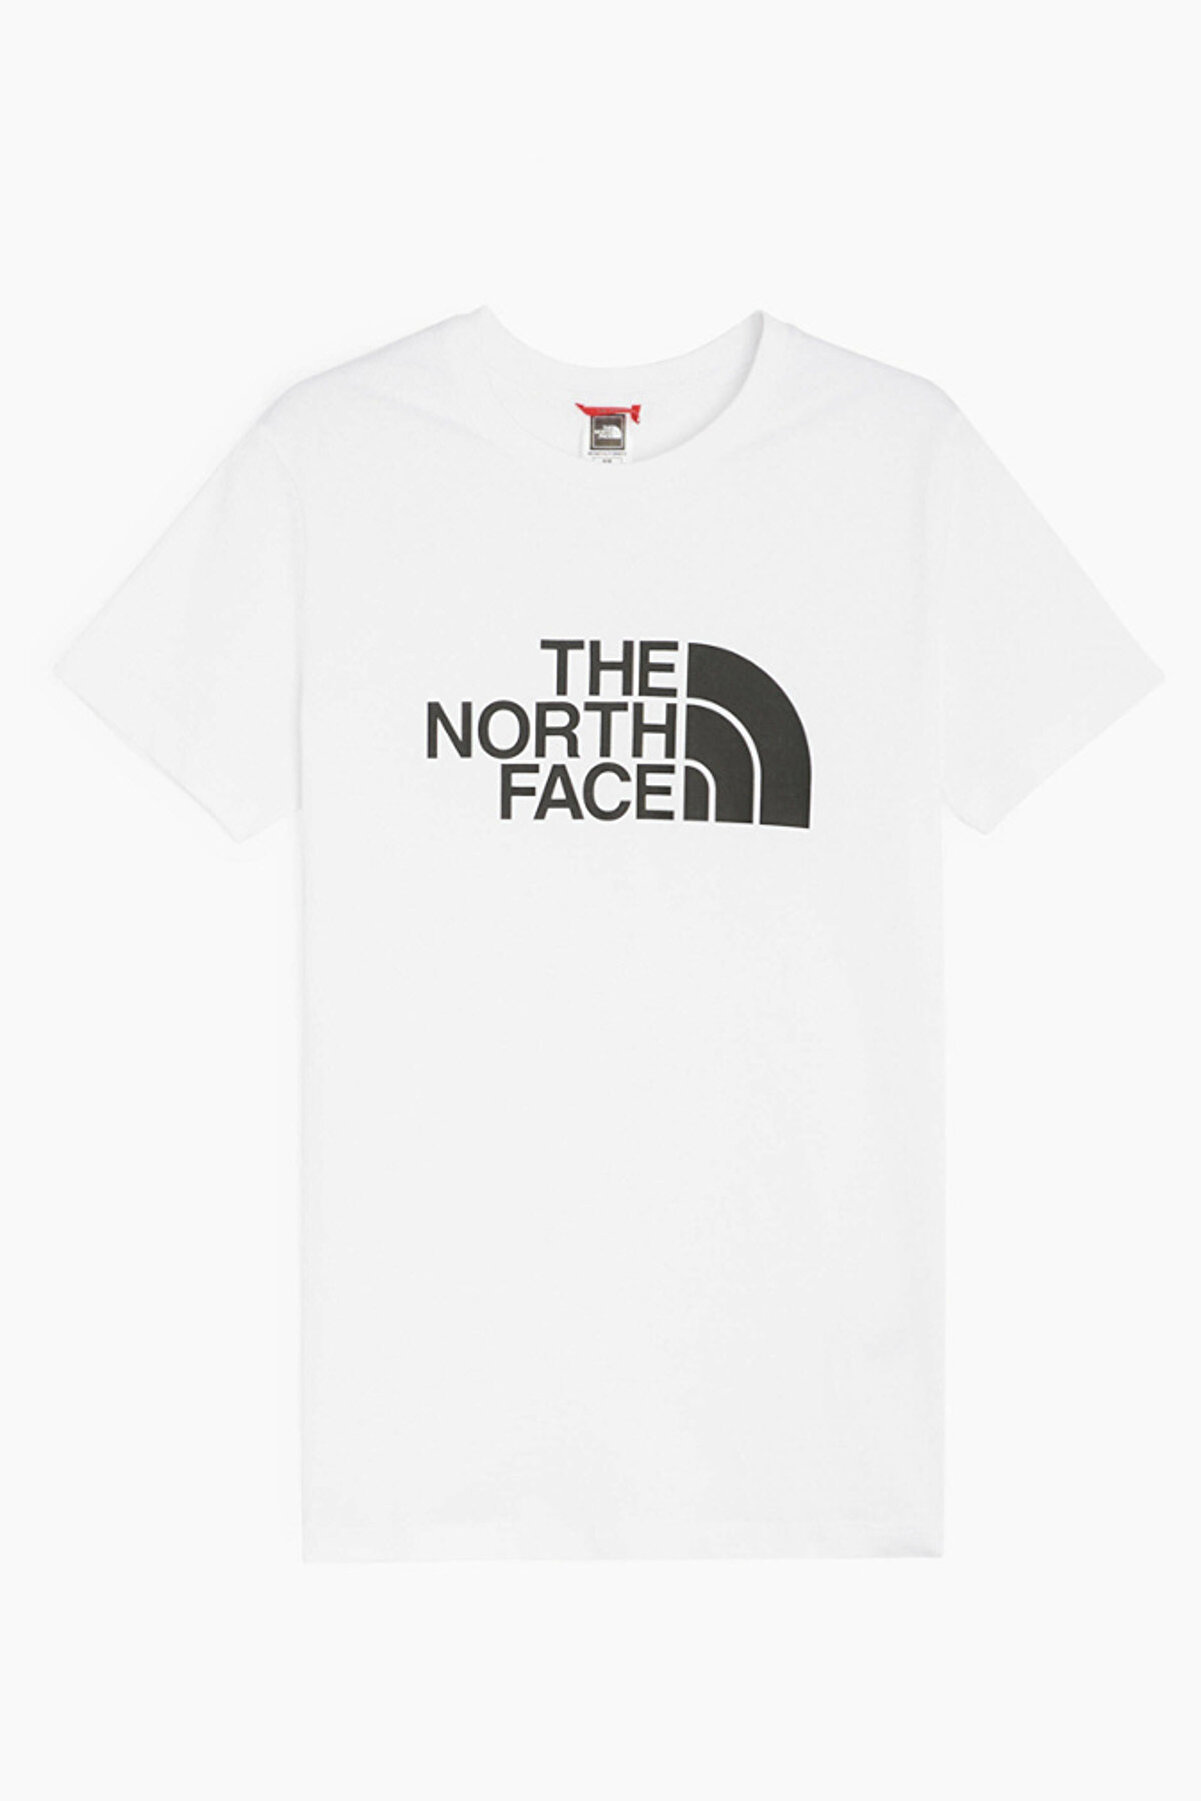 The North Face Easy Tee Kadın T-shirt - T94t1qfn4